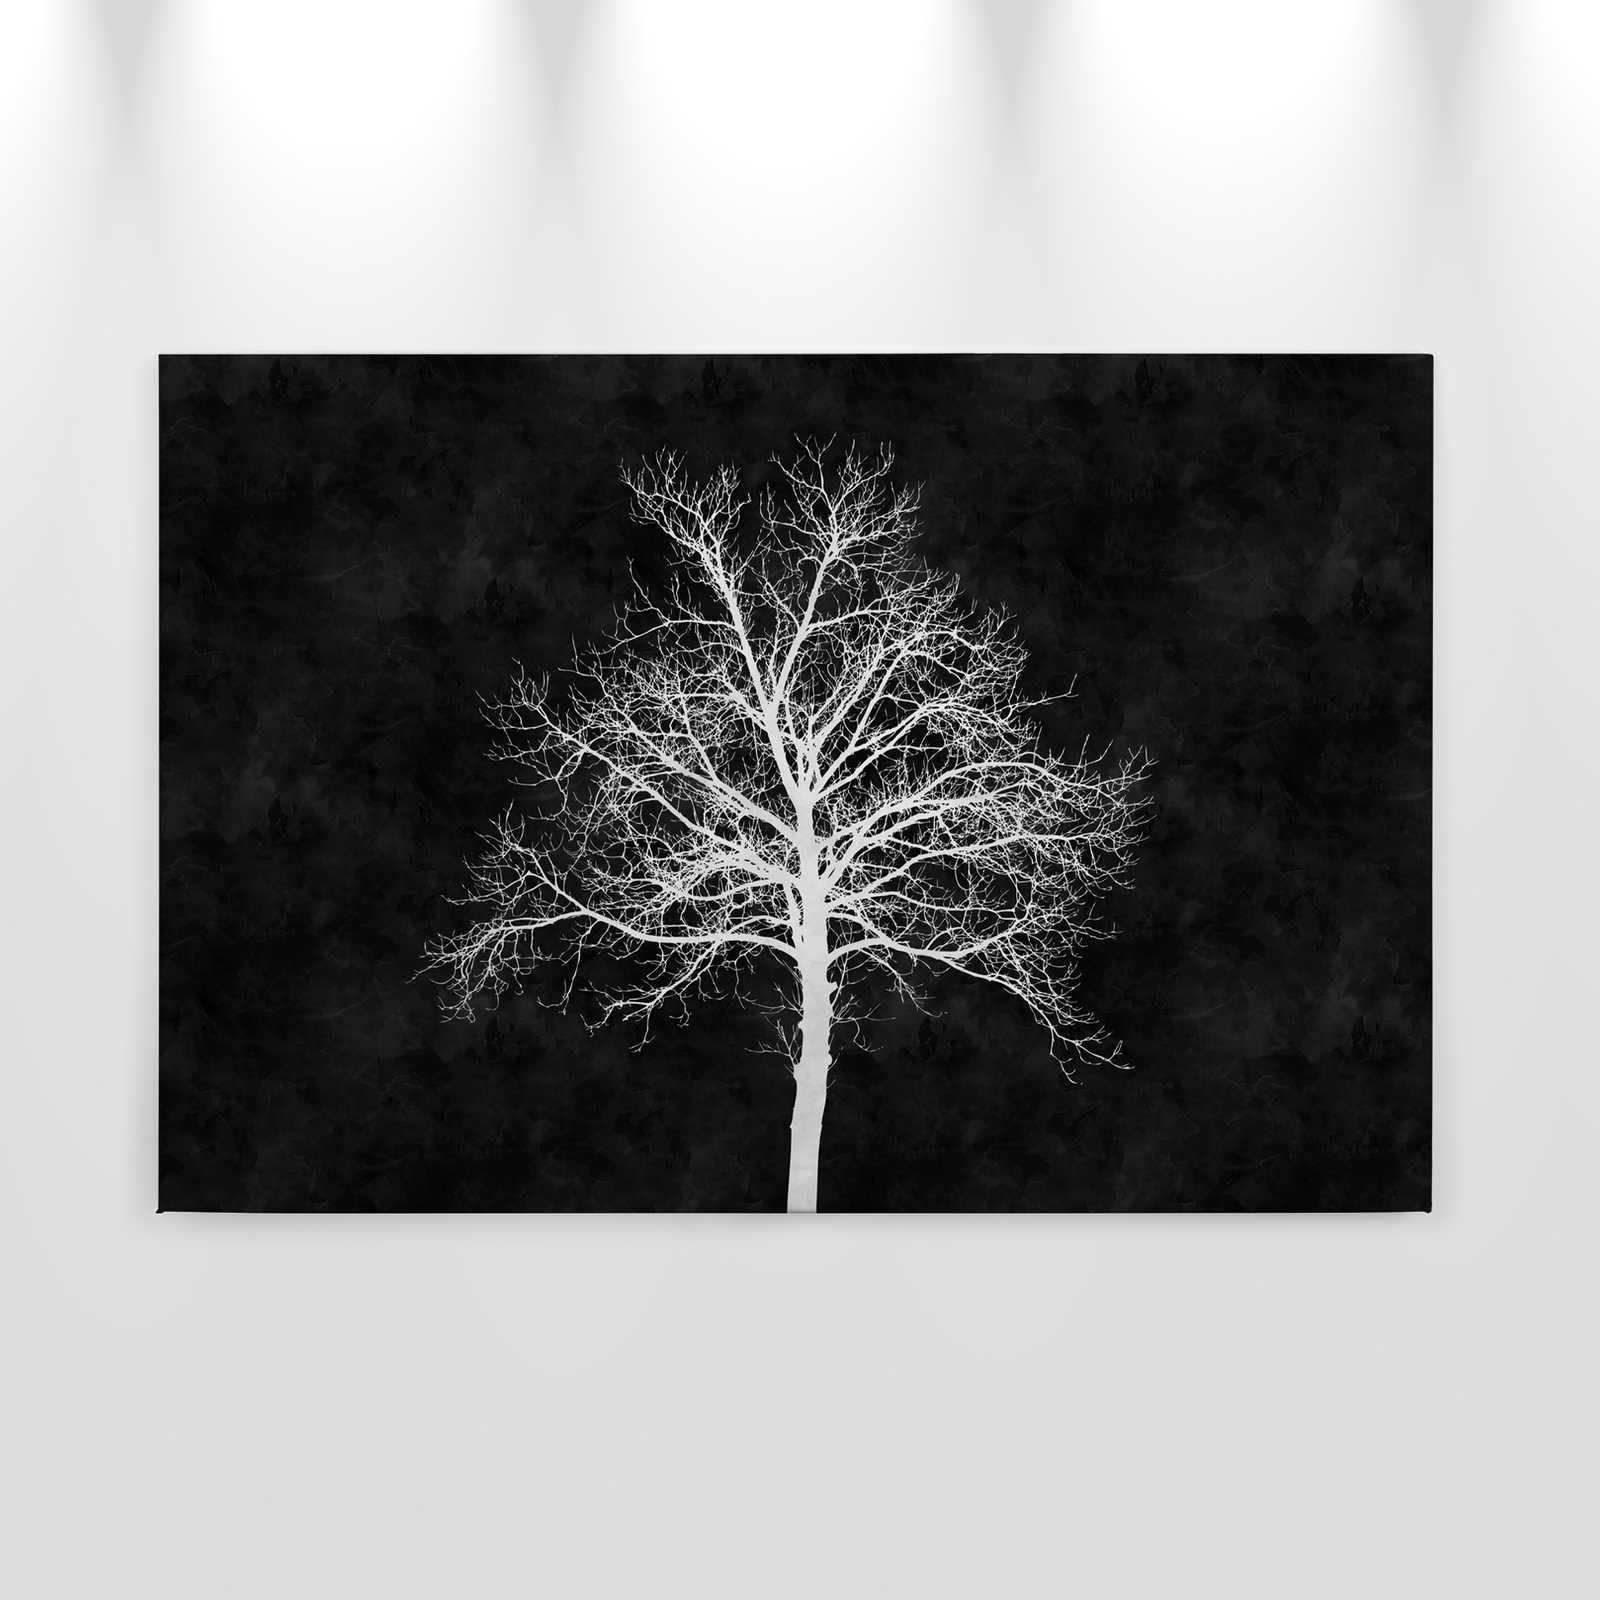             Toile noir et blanc arbre blanc - 0,90 m x 0,60 m
        